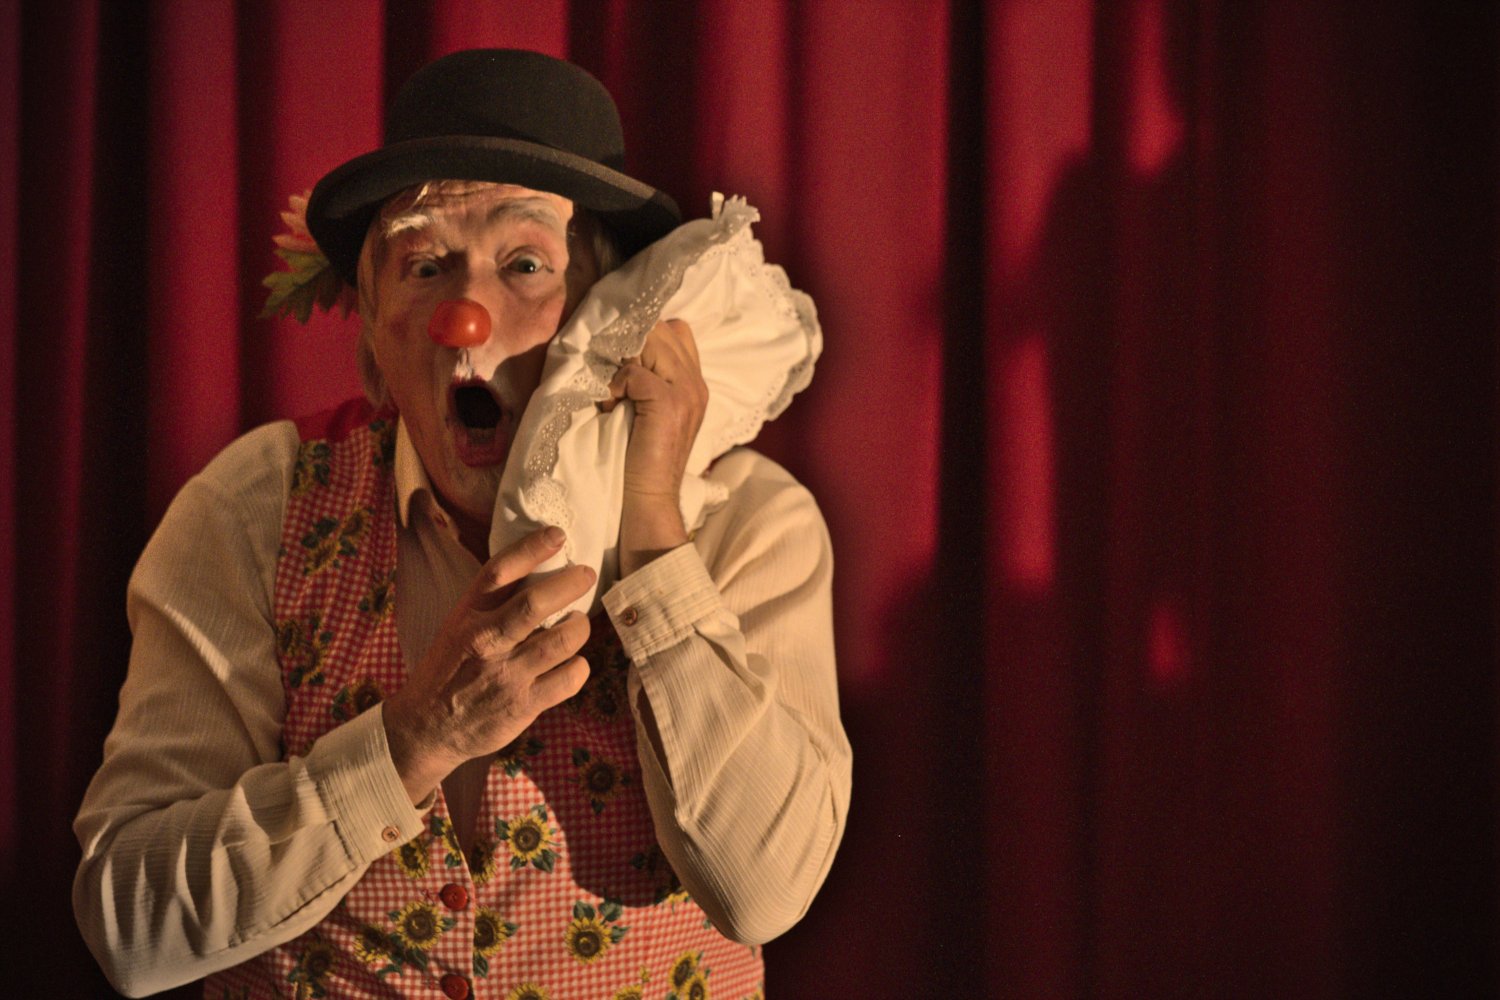 Anton o rato do circo - Companhia Marimbombo